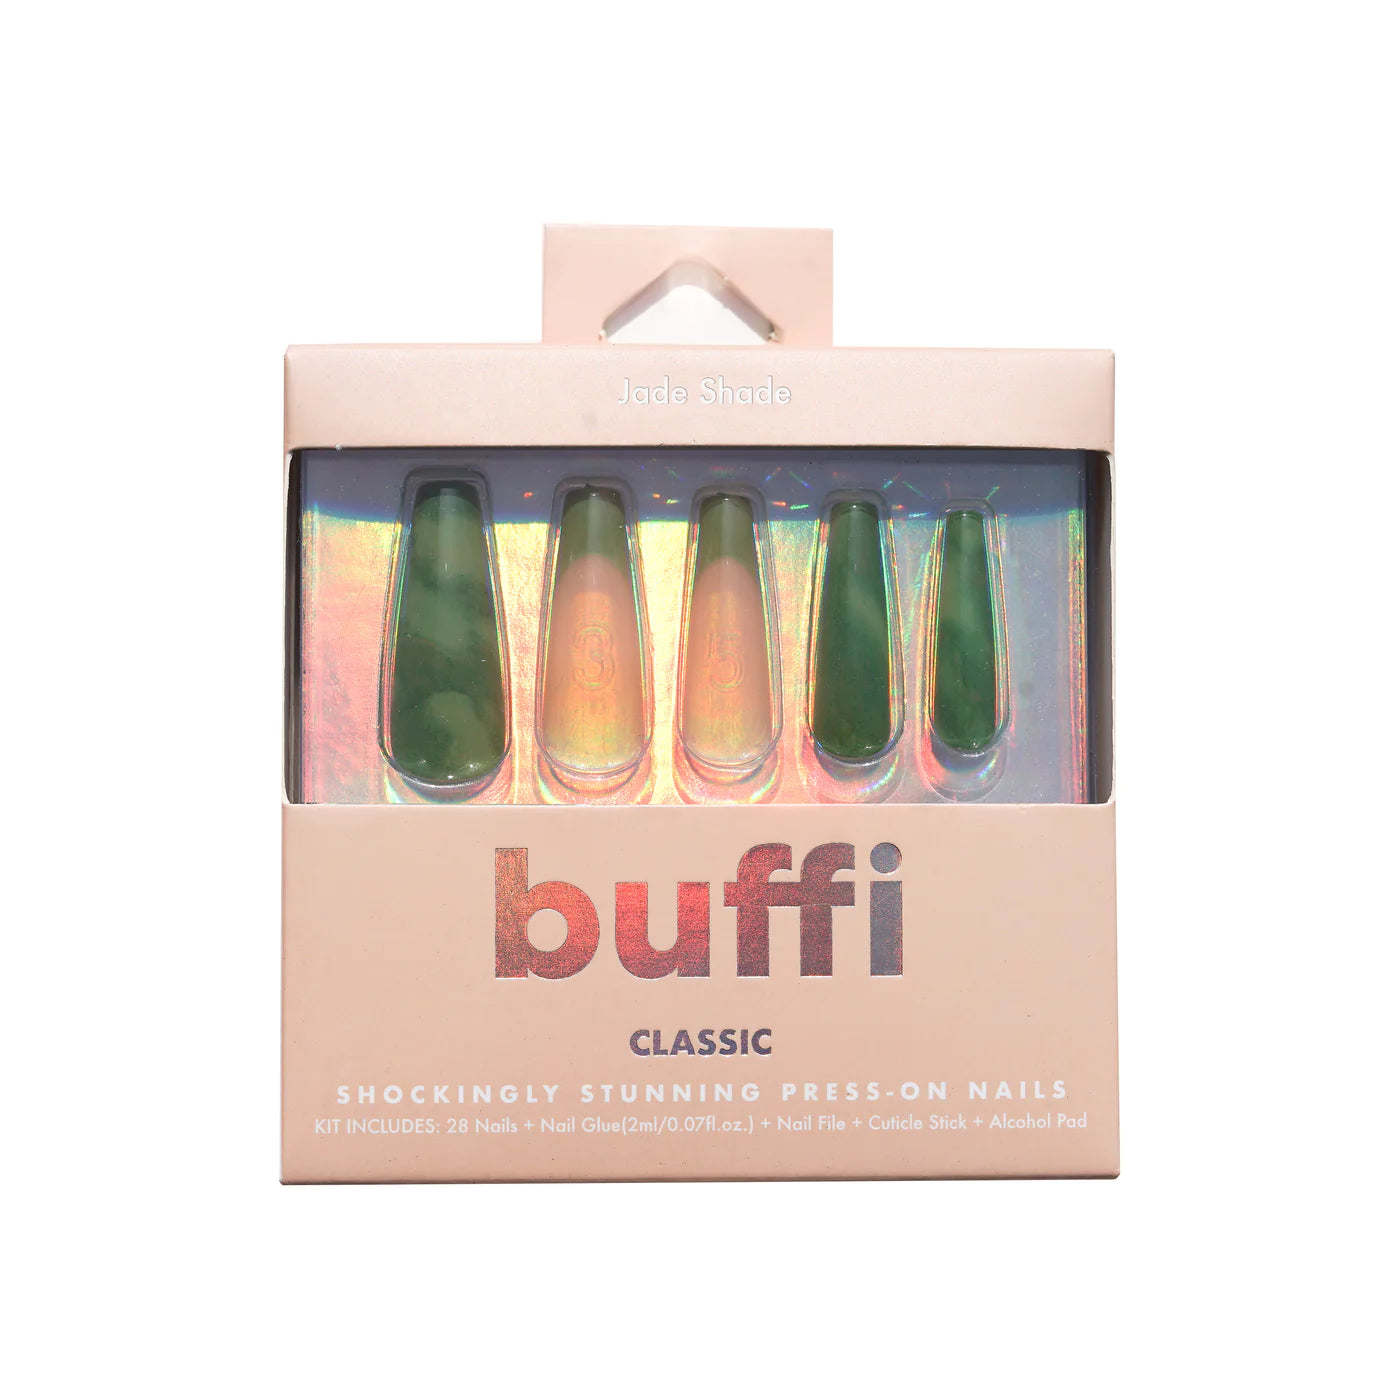 Kara Beauty - Buffi Press On Nails Jade Shade